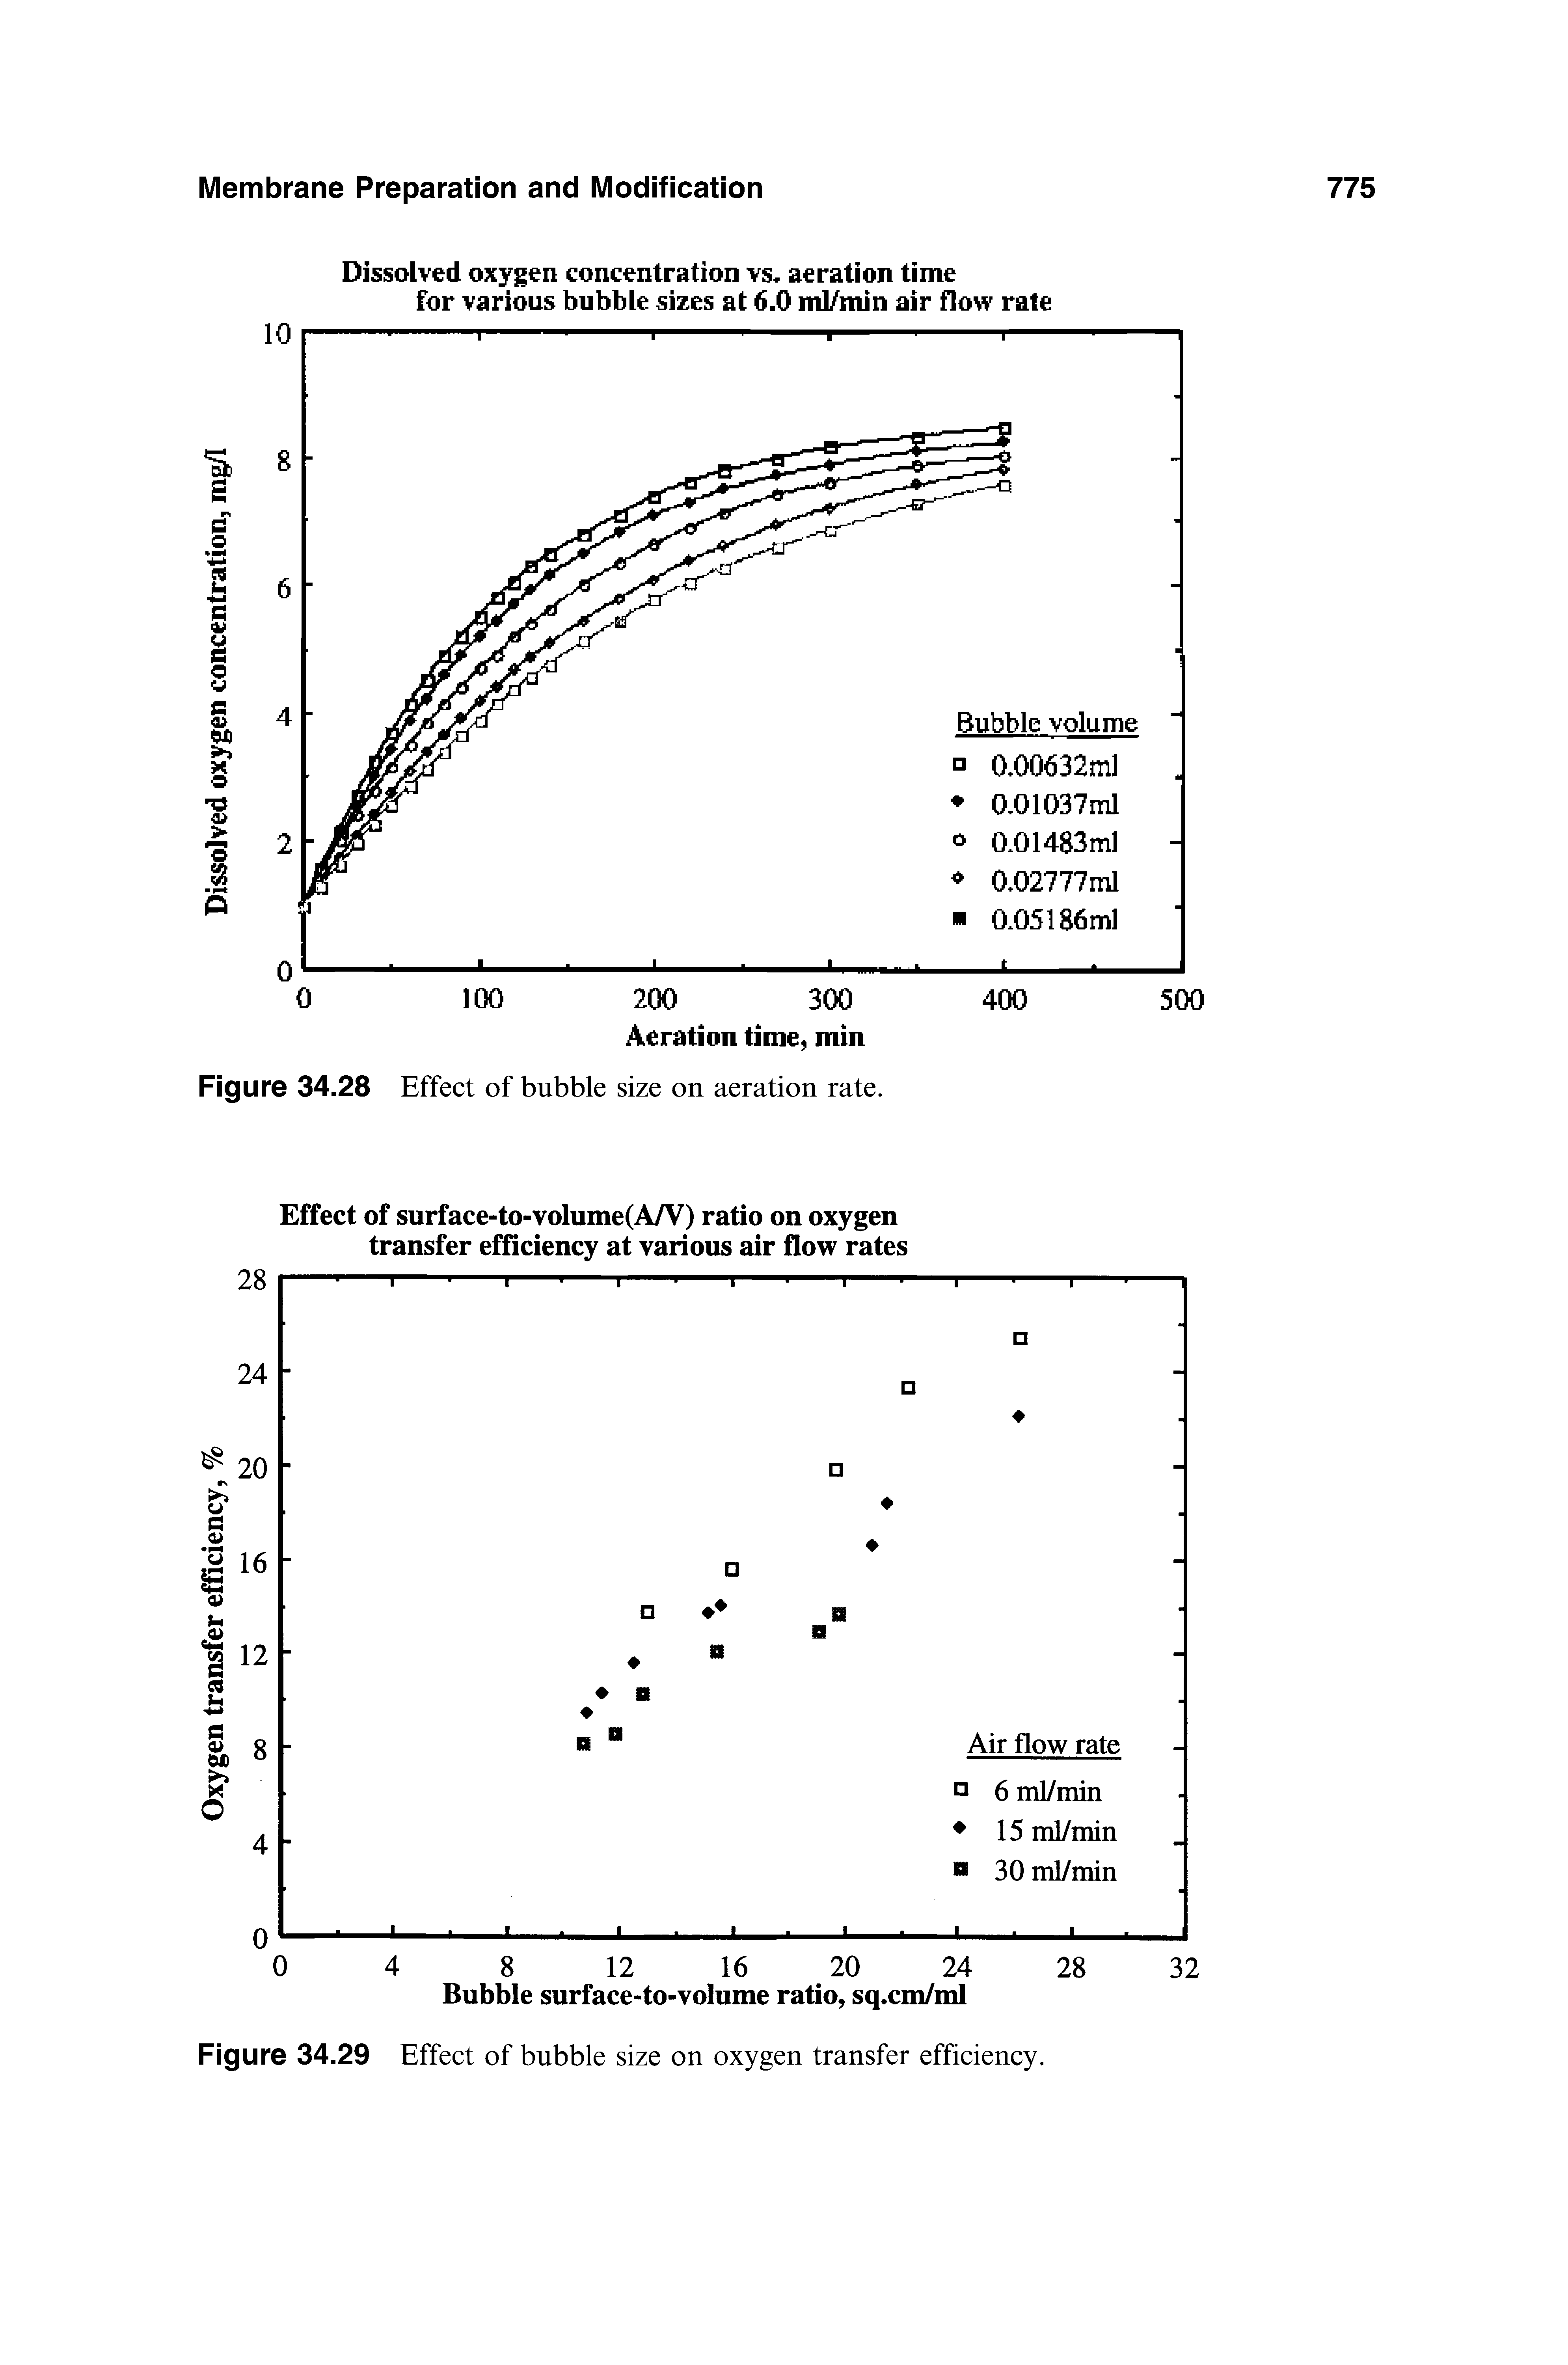 Figure 34.29 Effect of bubble size on oxygen transfer efficiency.